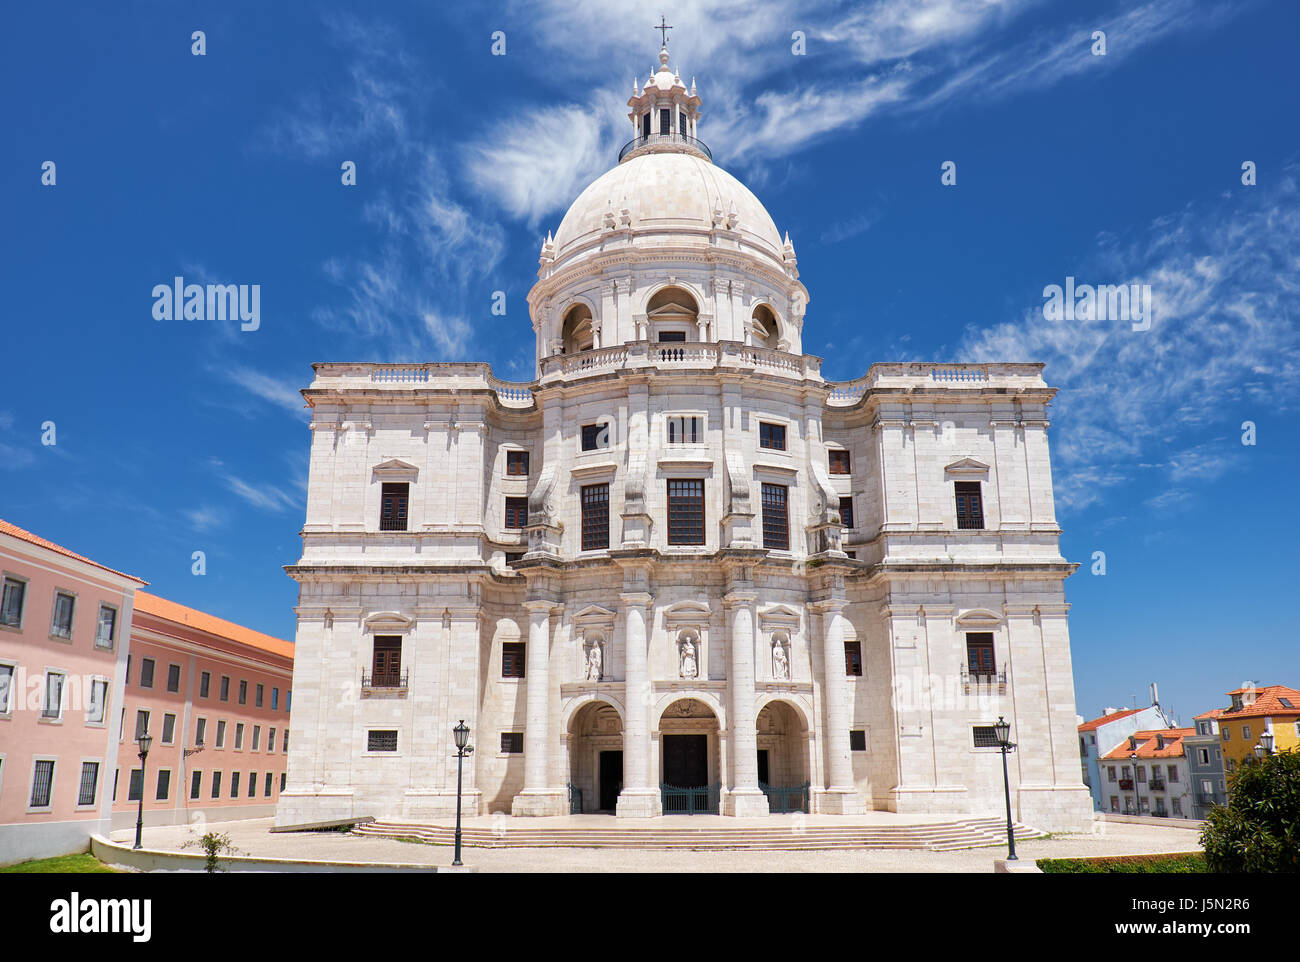 The baroque style central facade of National Pantheon, originally Church of Santa Engracia. Lisbon. Portugal. Stock Photo